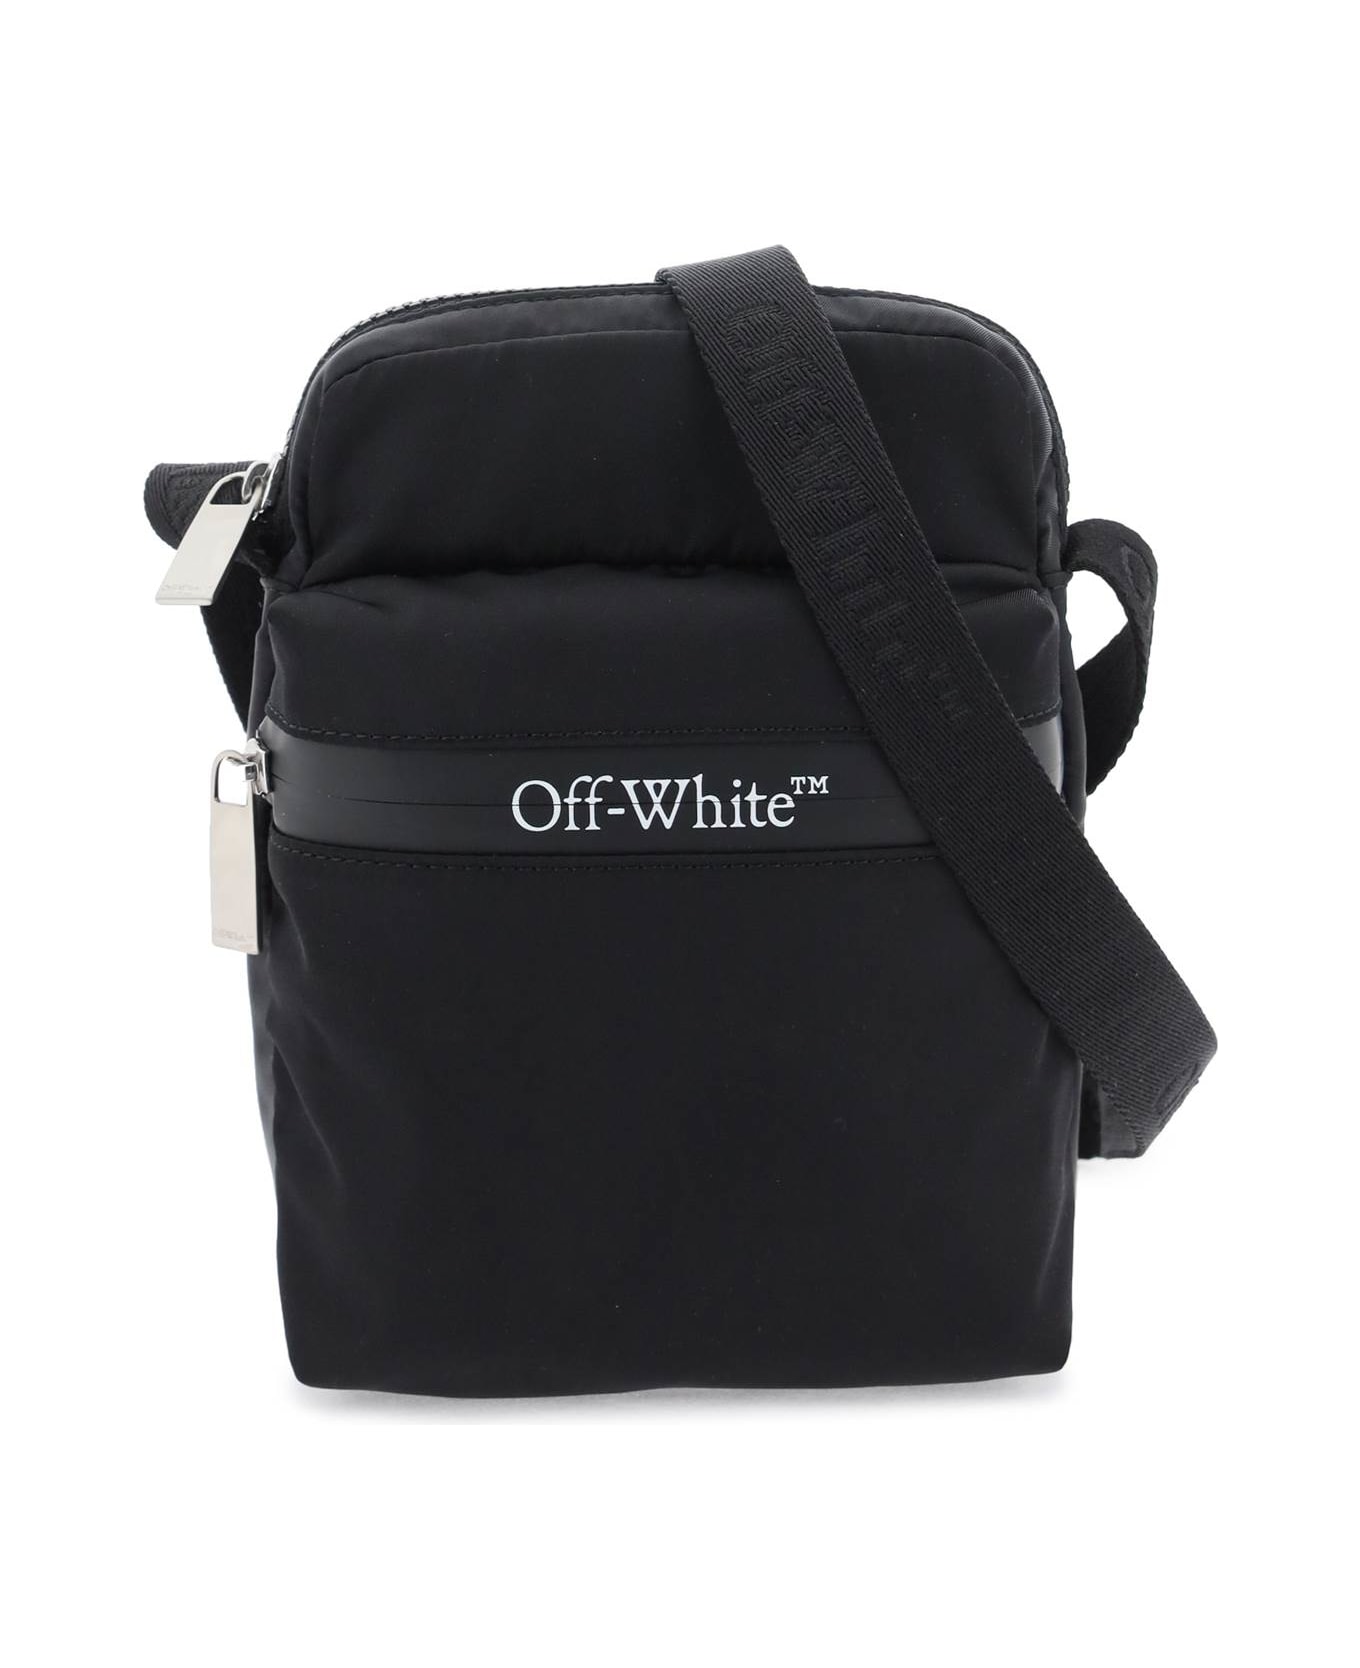 Off-White Black Fabric Bag - Black No Color